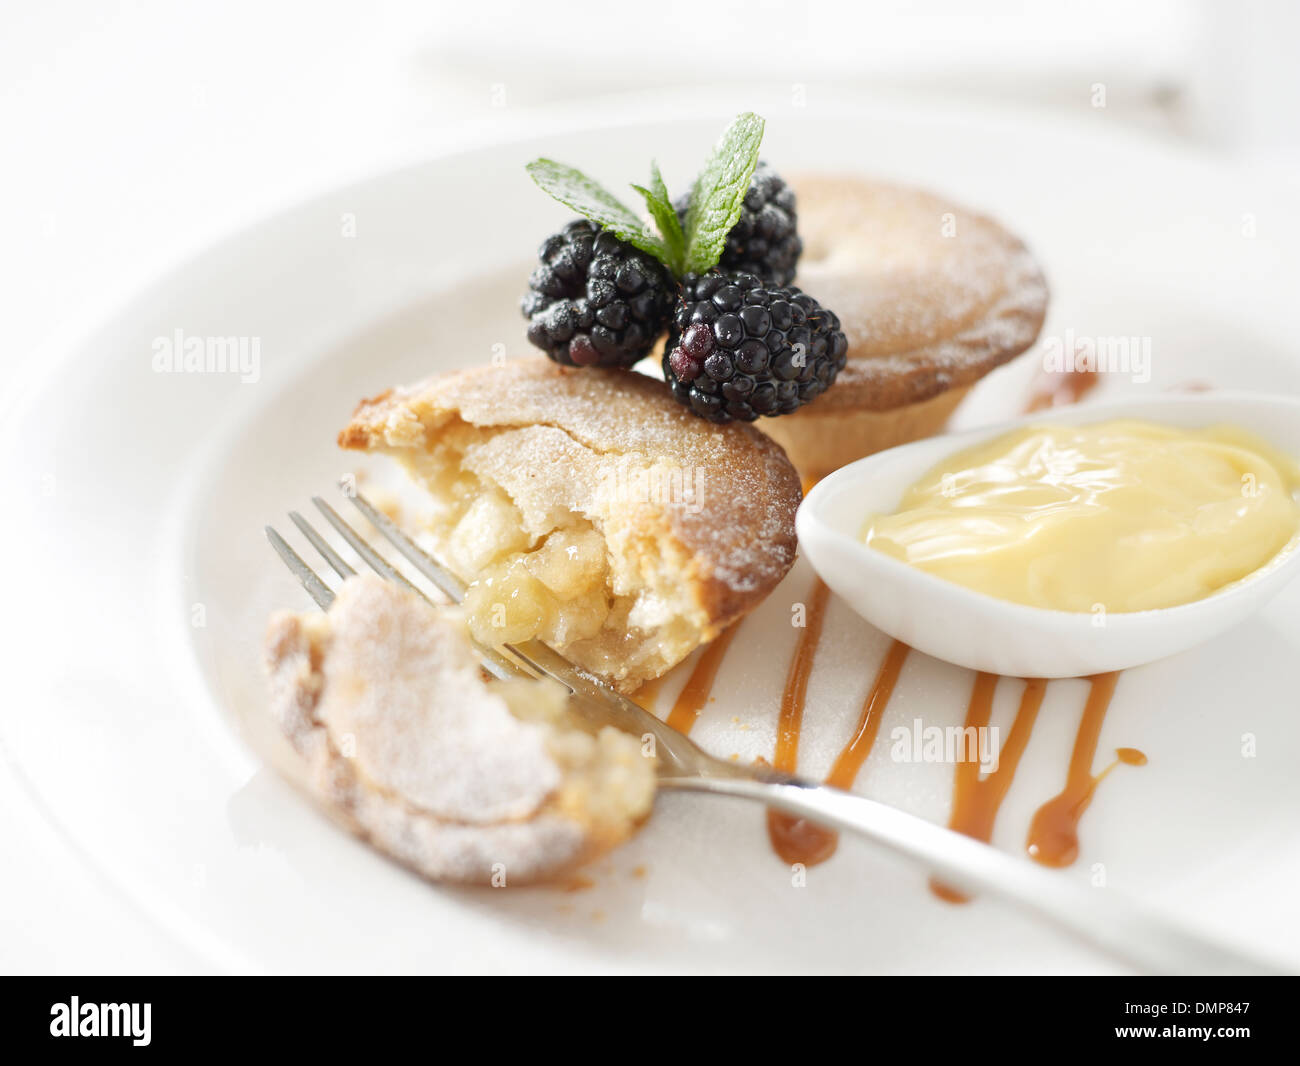 apple pie pies custard blackberries mint sauce dish pot fork napkin Stock Photo